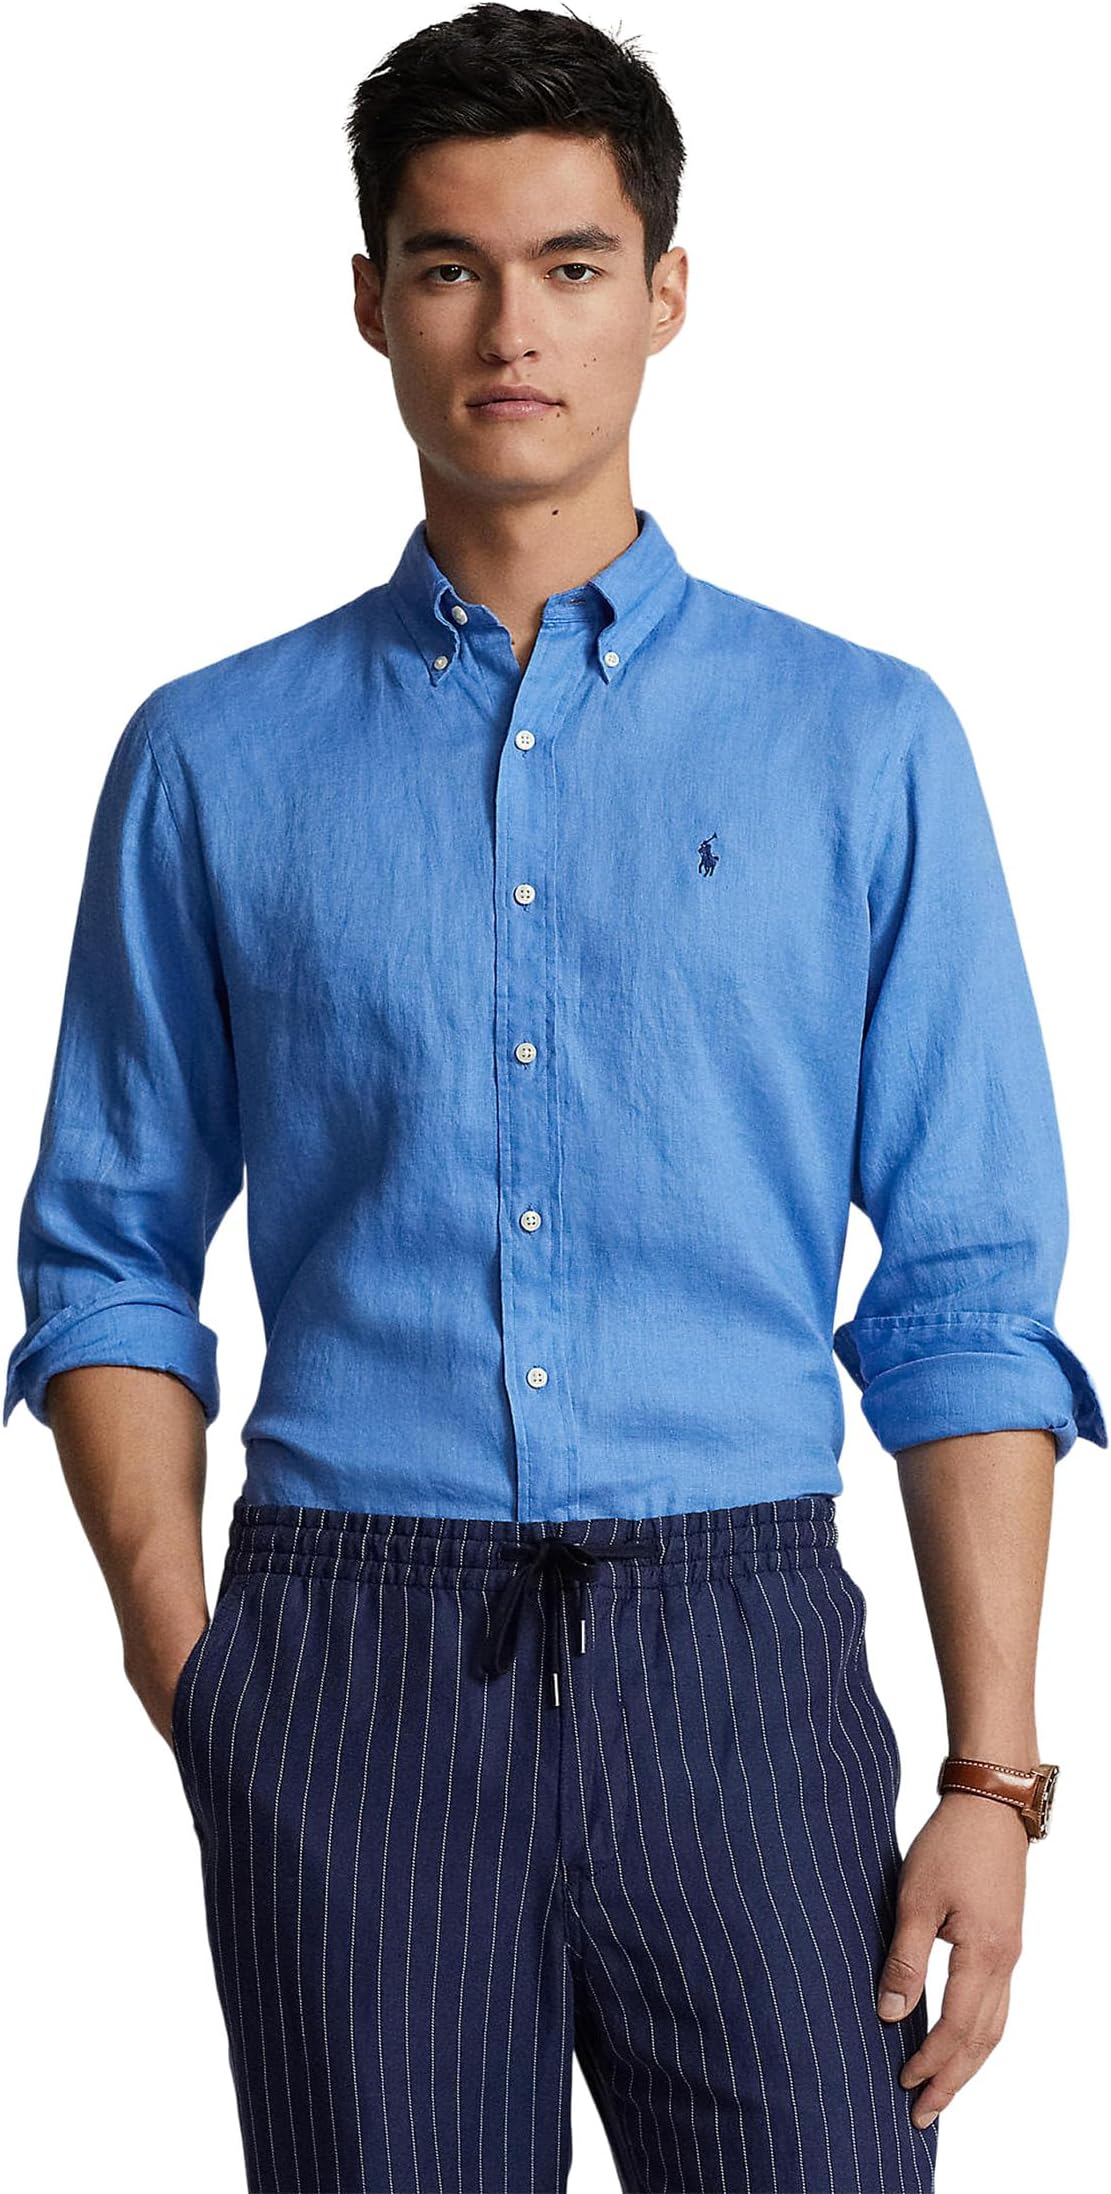 Льняная рубашка классического кроя с длинными рукавами Polo Ralph Lauren, цвет Summer Blue 2021 summer new polo shirt men